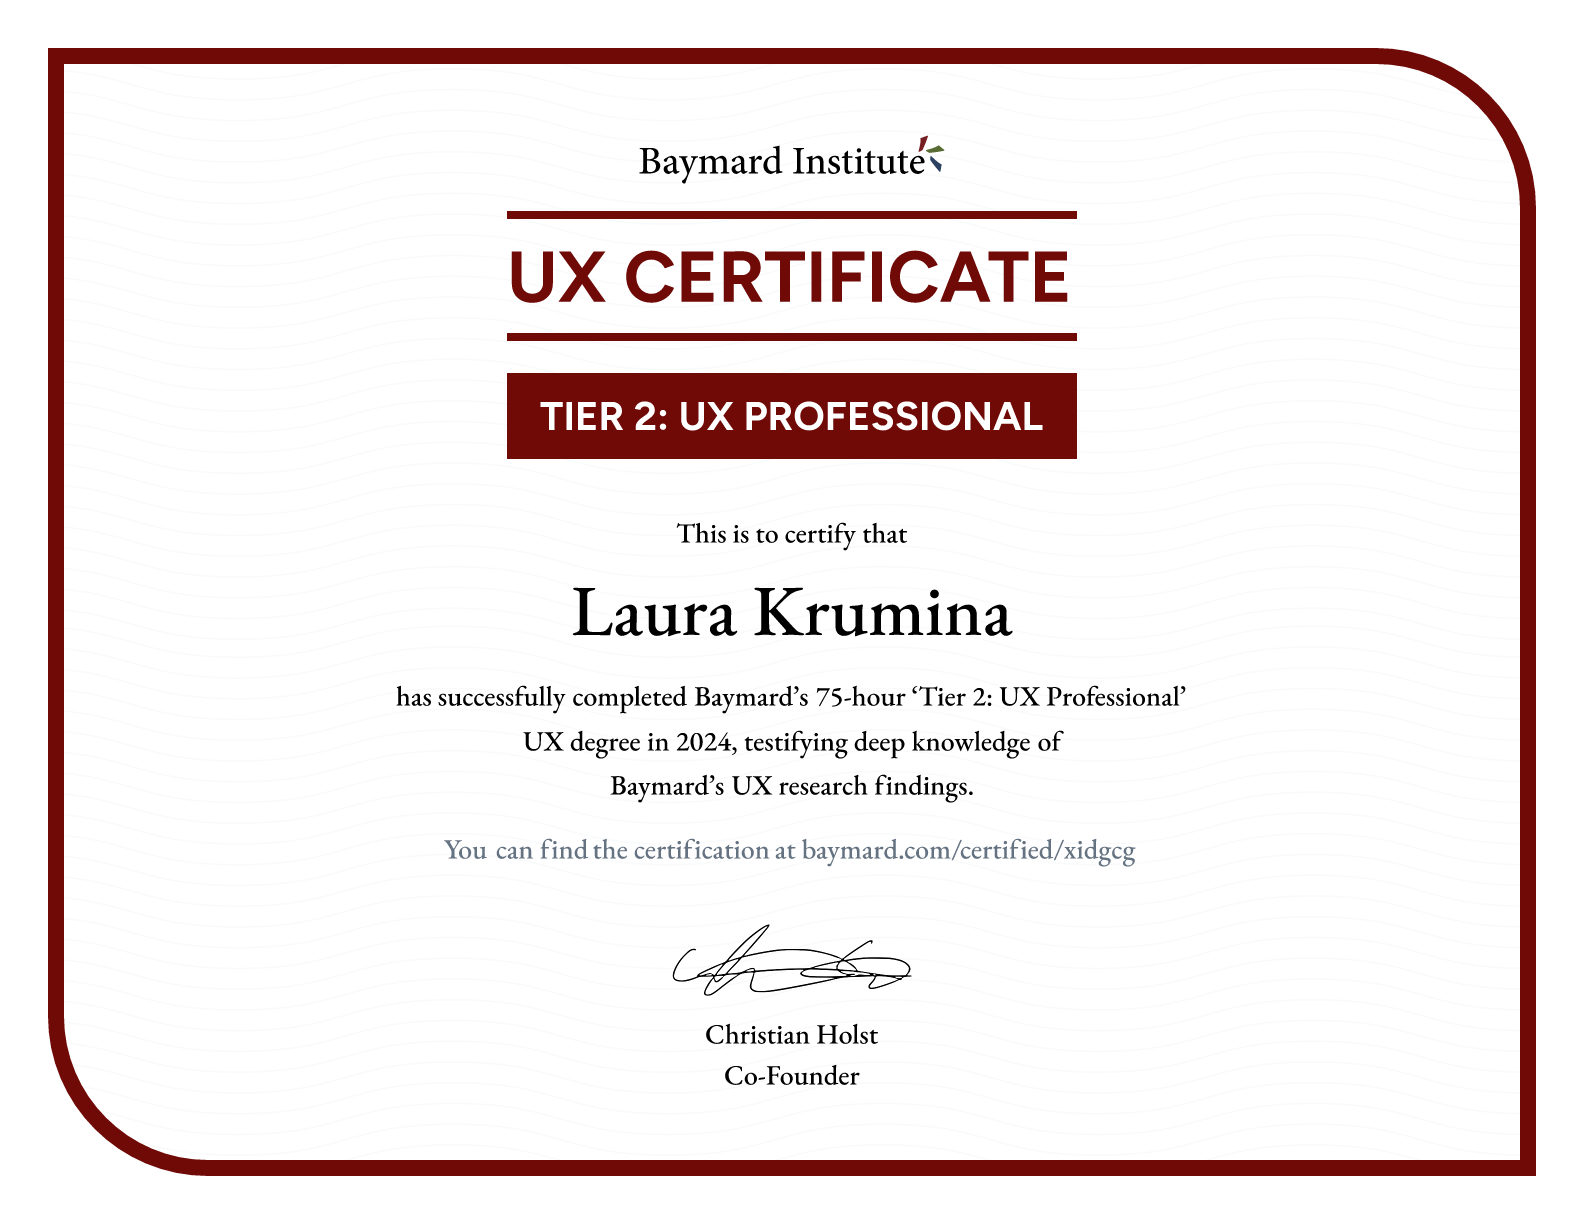 Laura Krumina’s certificate